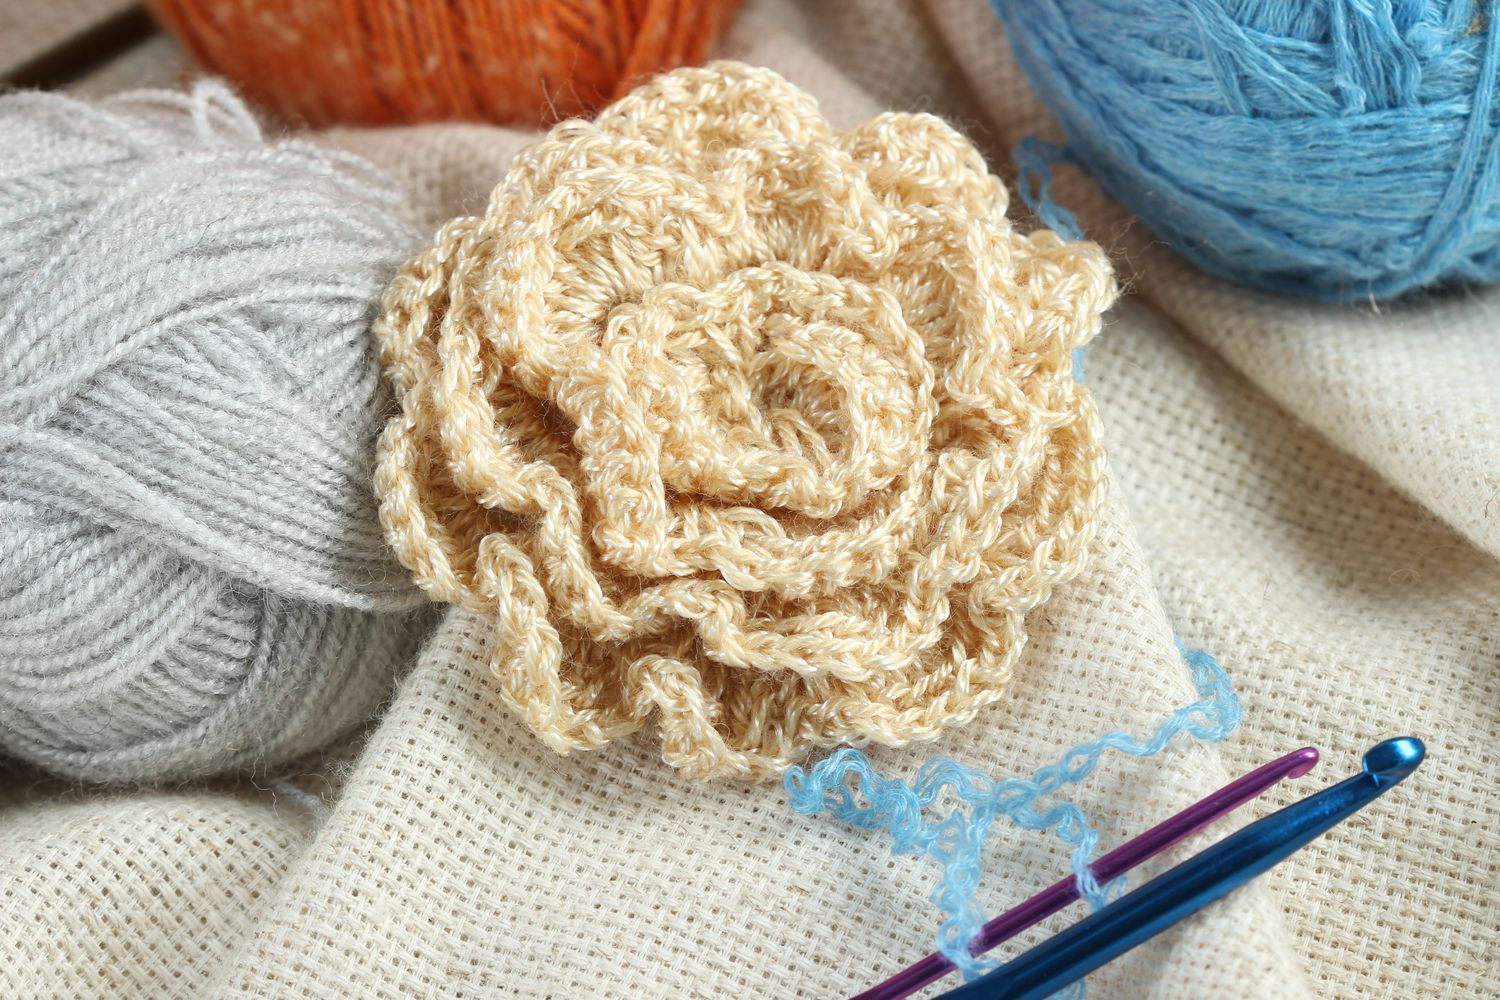 Crocheted flower handmade jewelry supplies crochet flower hair clips supplies photo 1